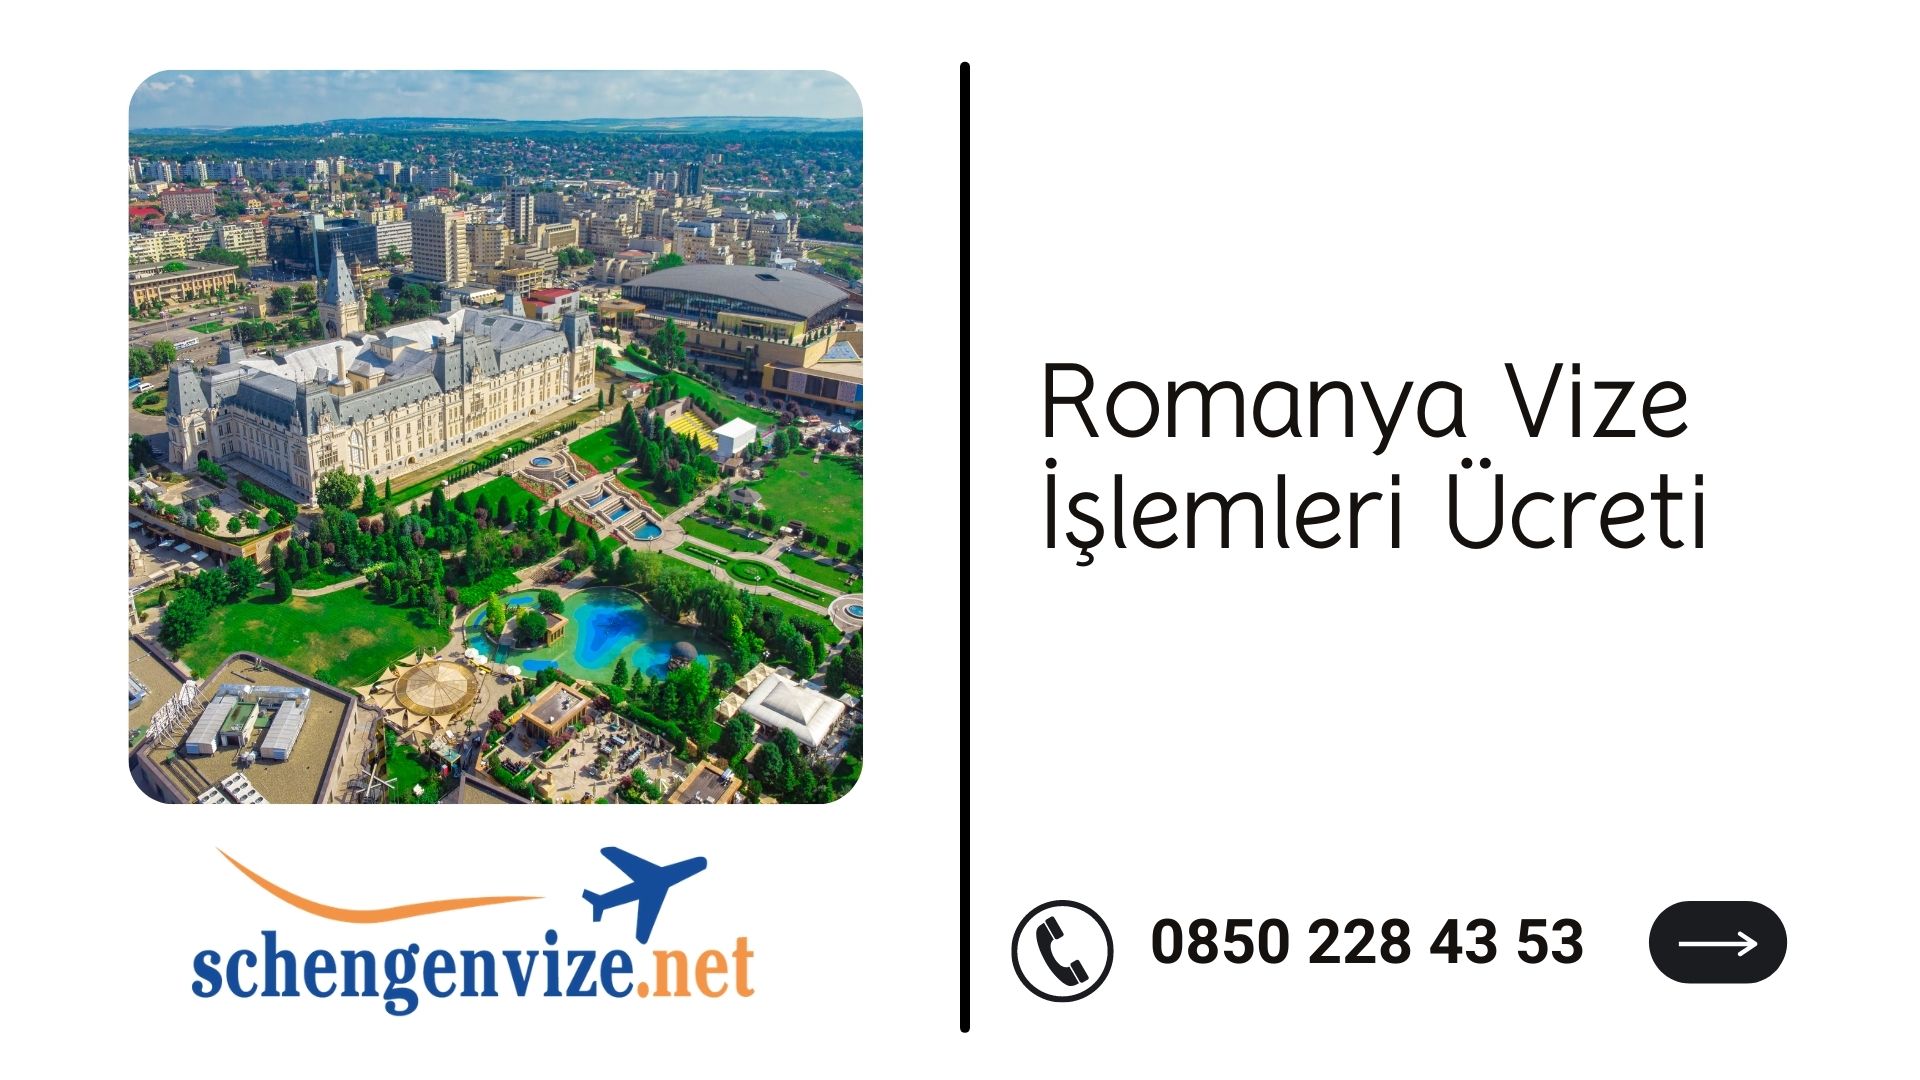 Romanya Vize İşlemleri Ücreti 2021